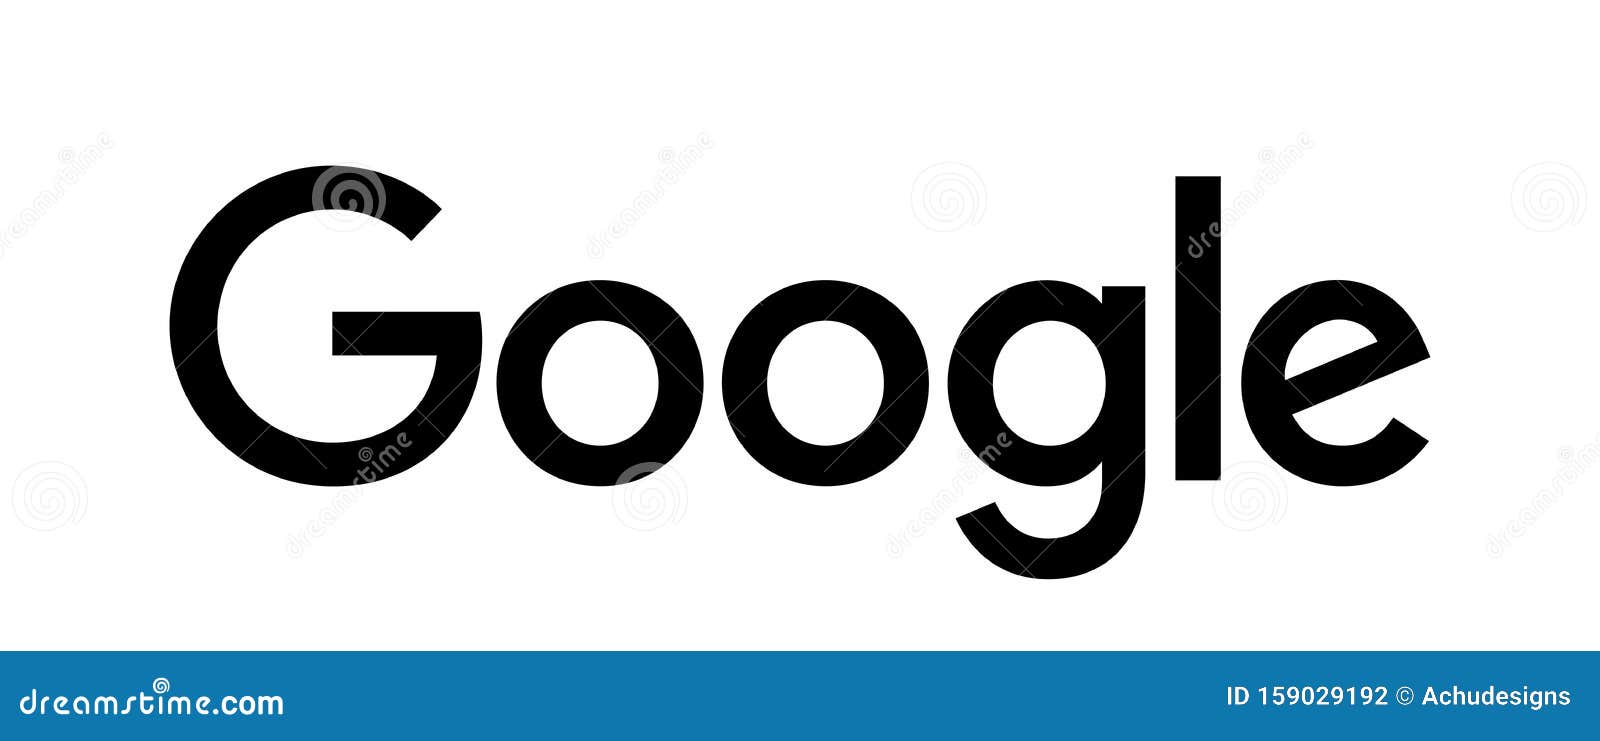 Biểu tượng Google trên nền trắng là biểu tượng đặc trưng của Google. Hãy xem hình ảnh để cảm nhận sự độc đáo và trang nhã của biểu tượng này.